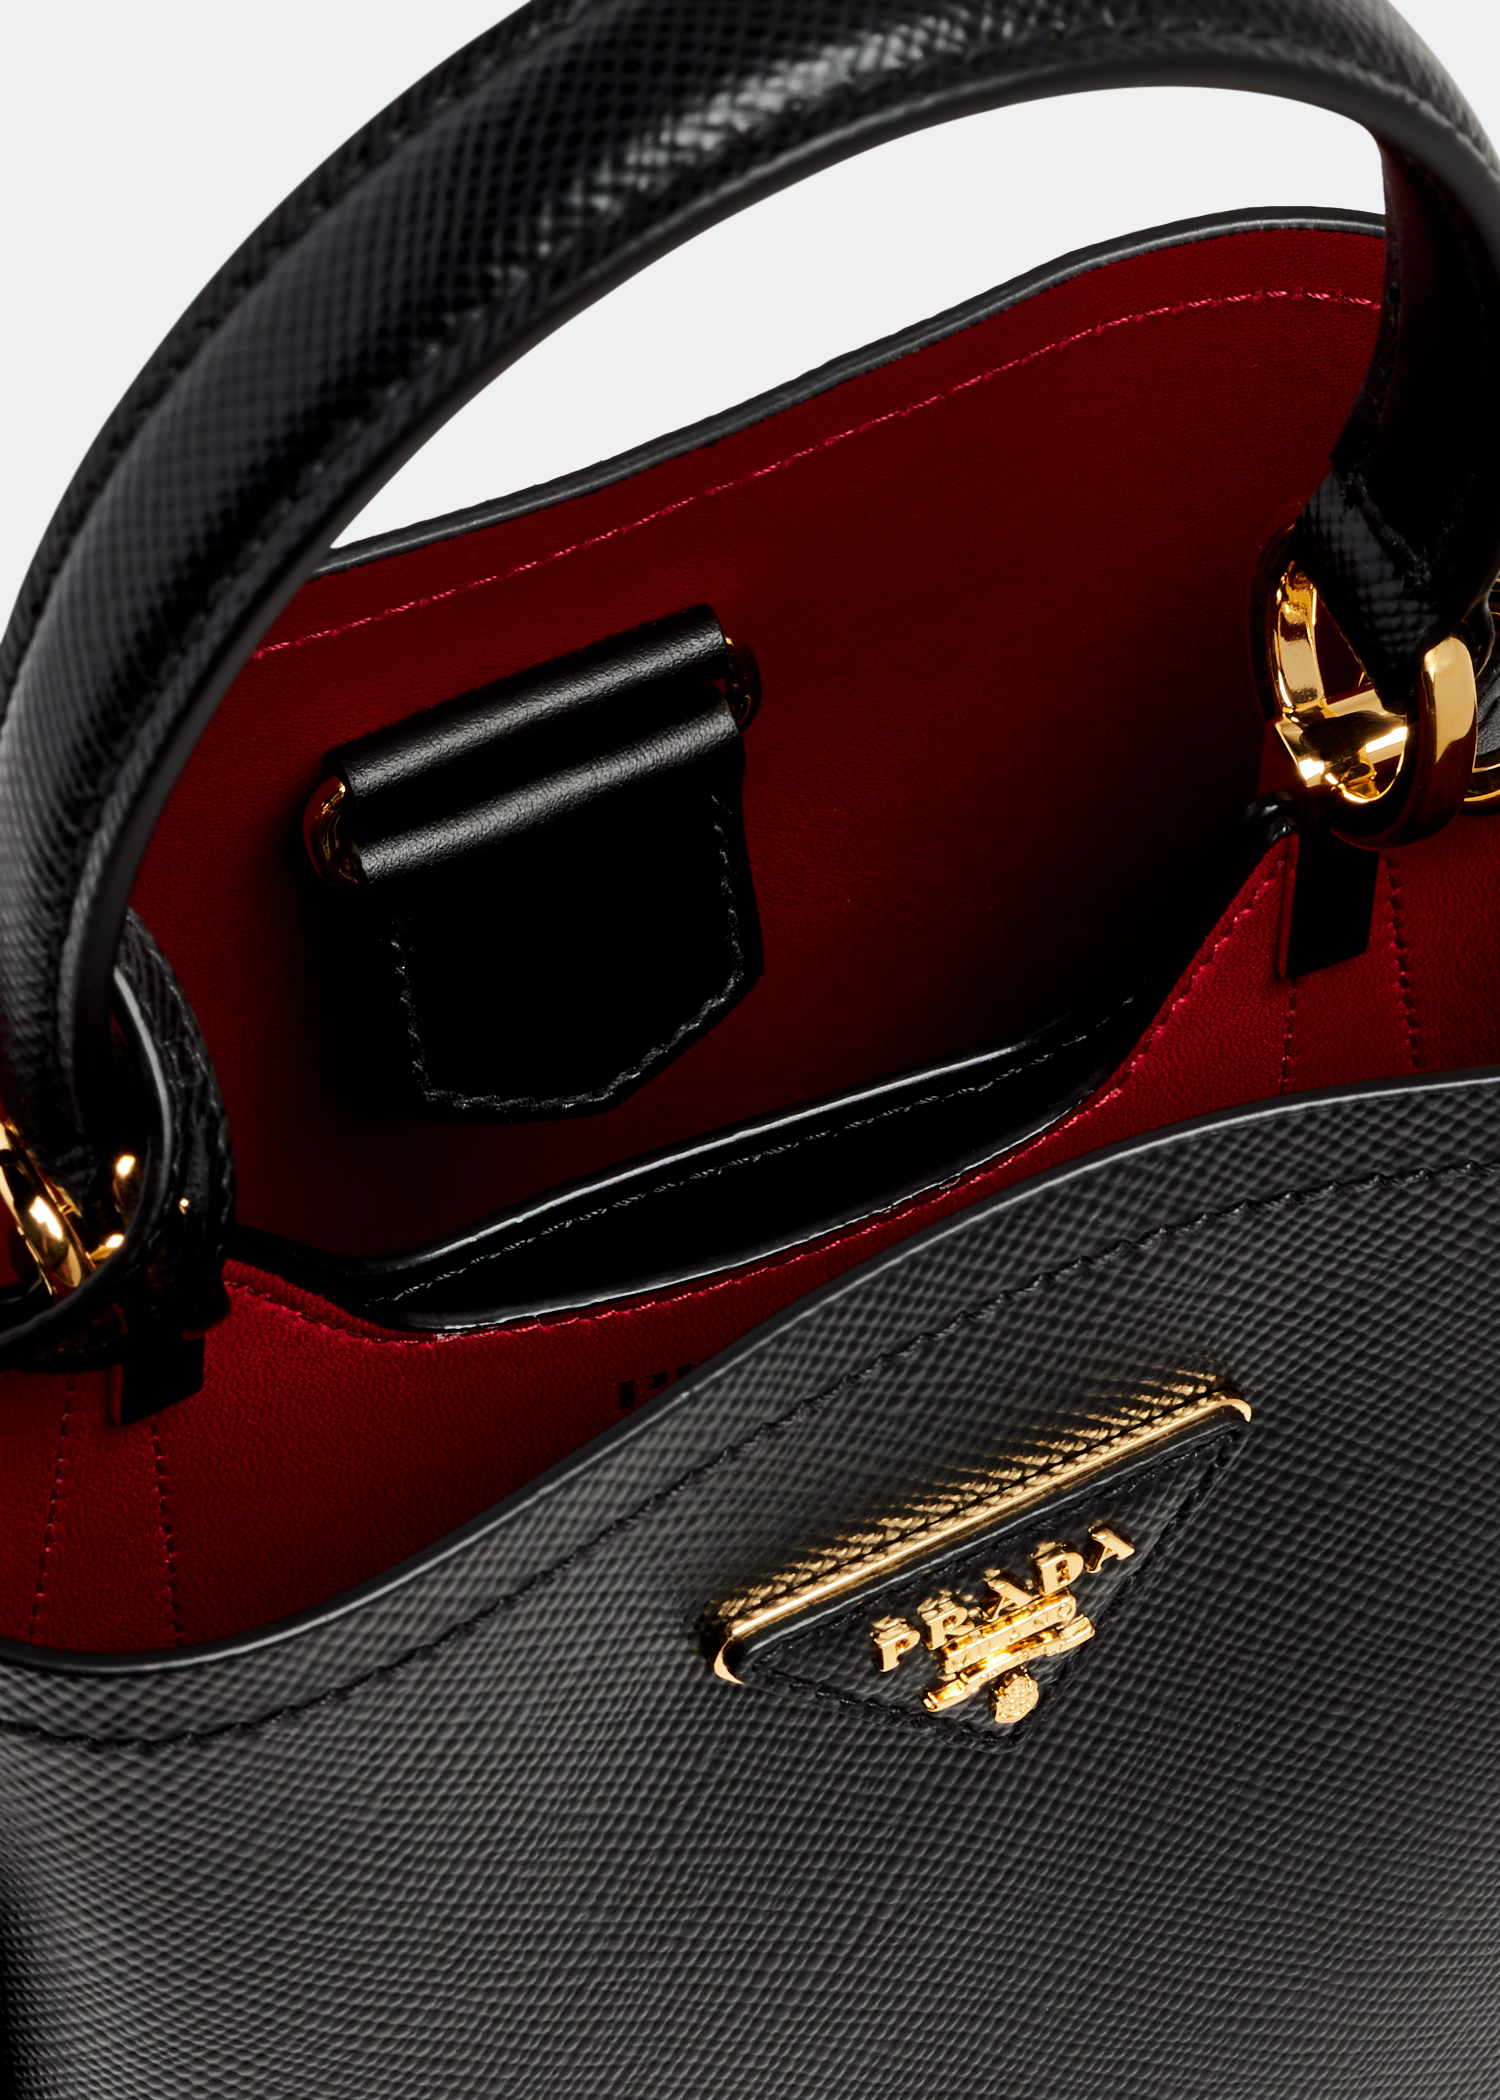 Buy Prada Black Small Prada Panier Bag in Saffiano Leather for WOMEN in  Saudi